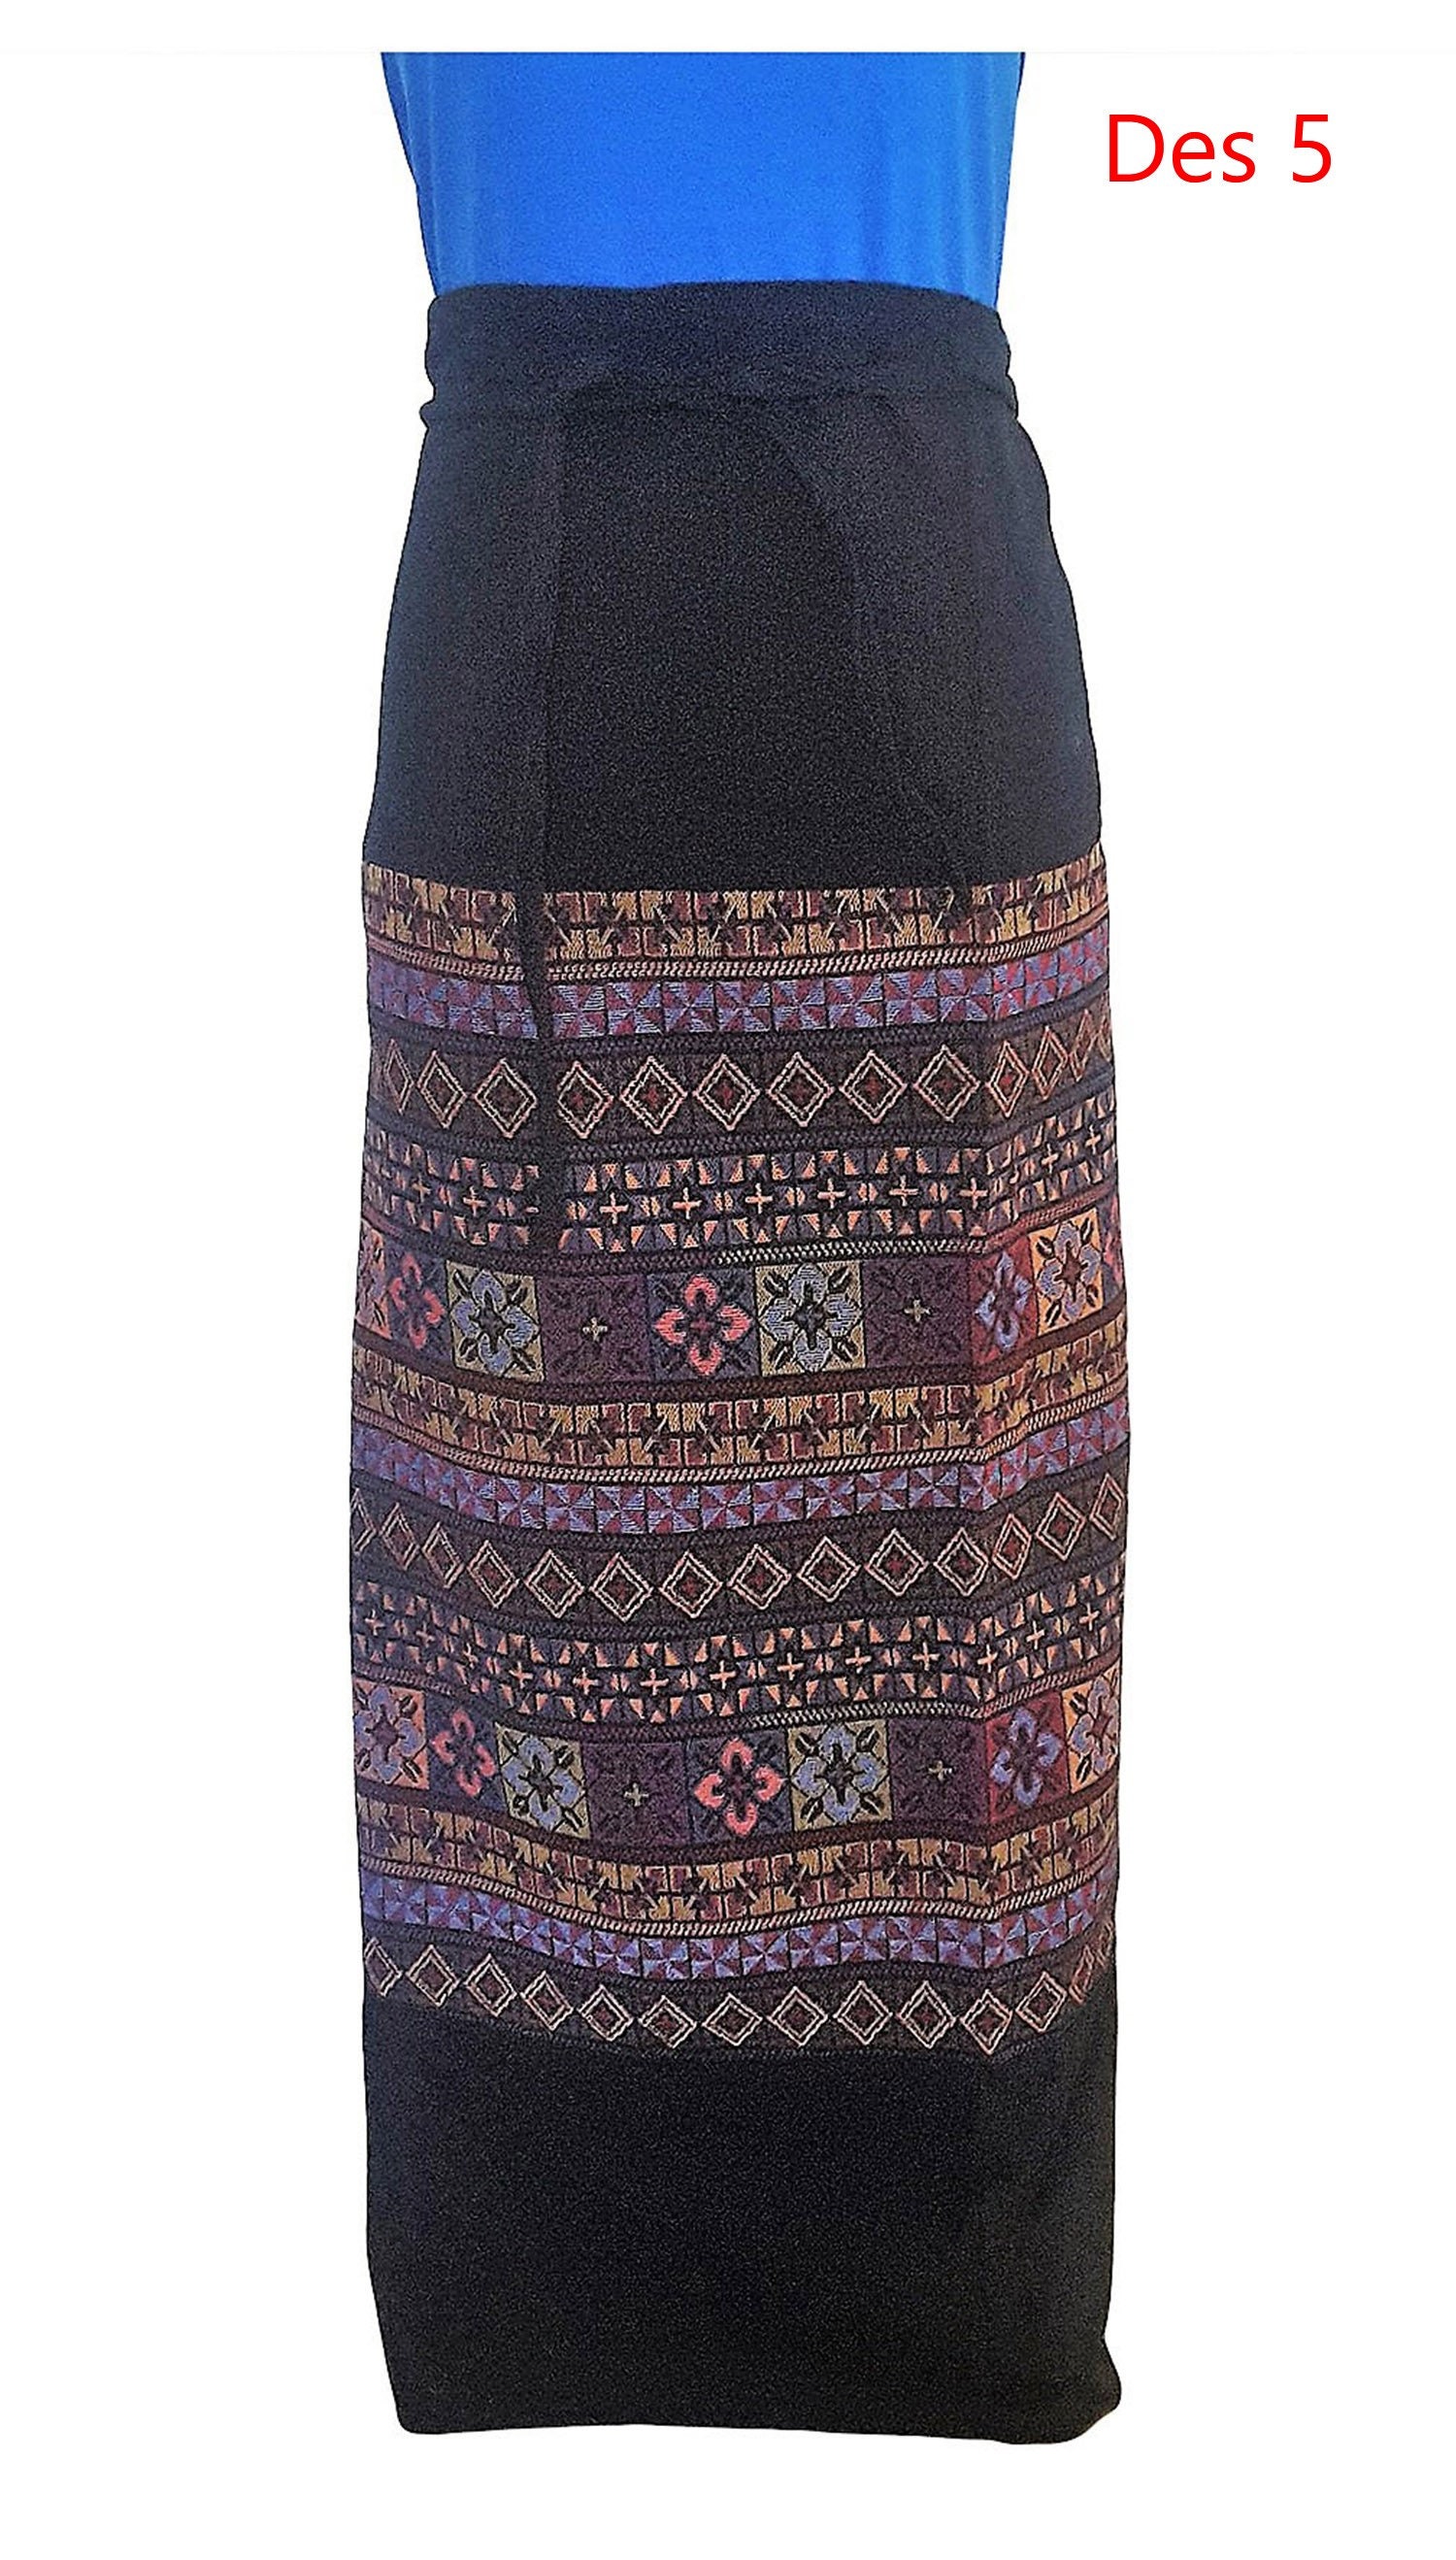 Traditional Thai Sarong Wrap Around Skirt Maxi Woven Cotton - Etsy